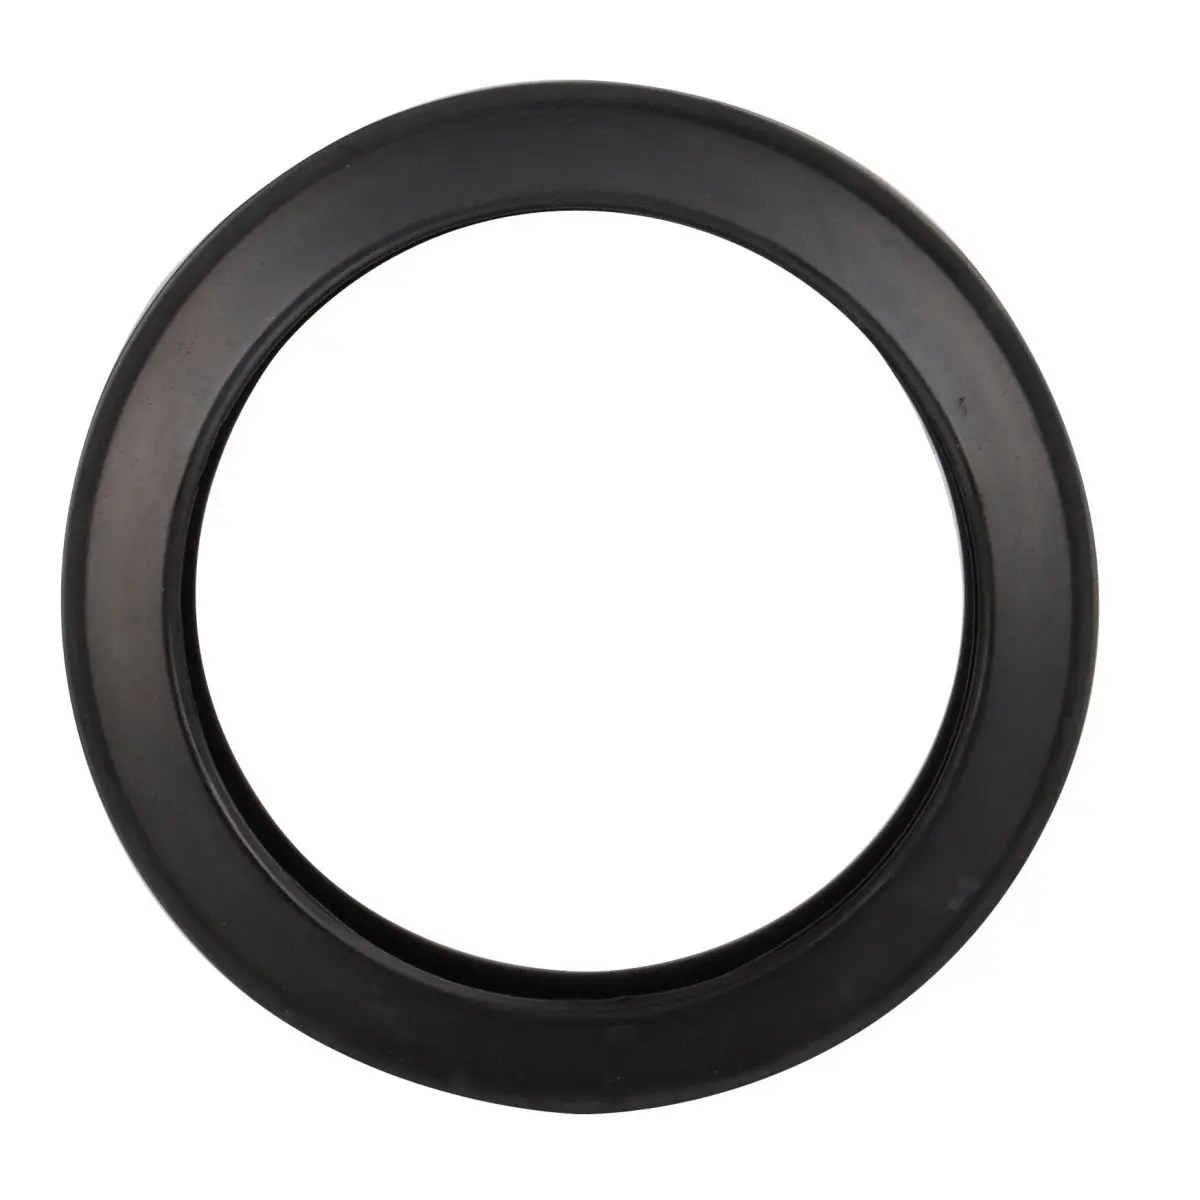 Tömítőgyűrű - fekete Porta Potti 145/165-höz